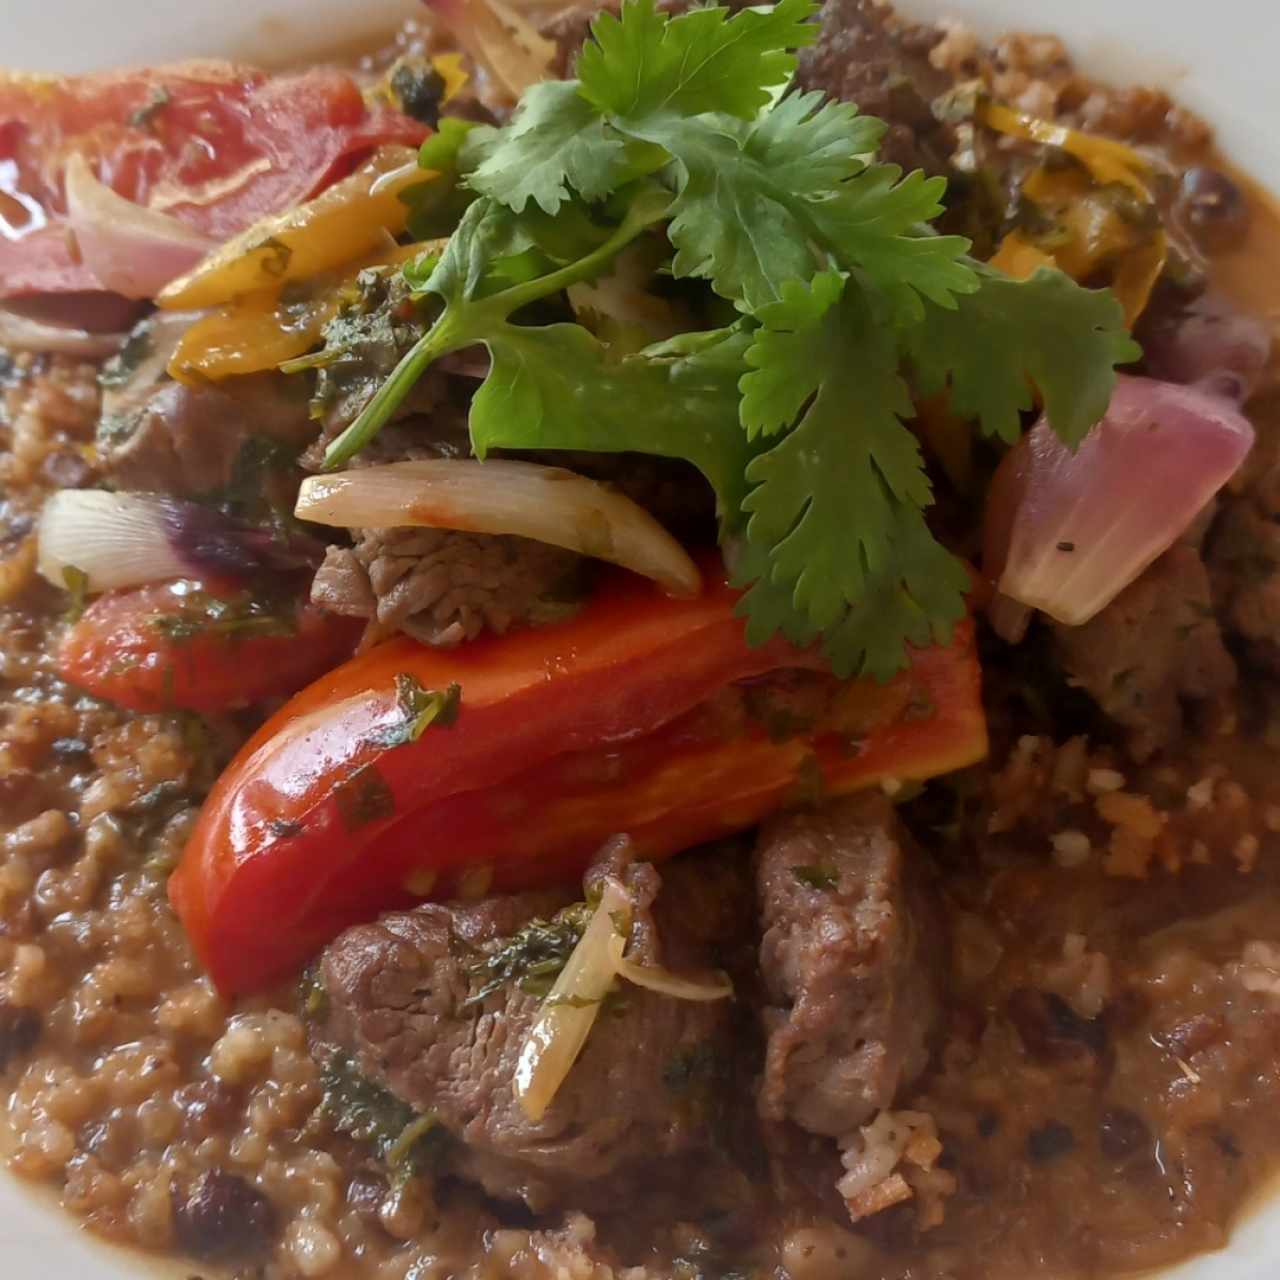 Tacu-tacu estilo panameño con arroz chiricano y vegetales saltados